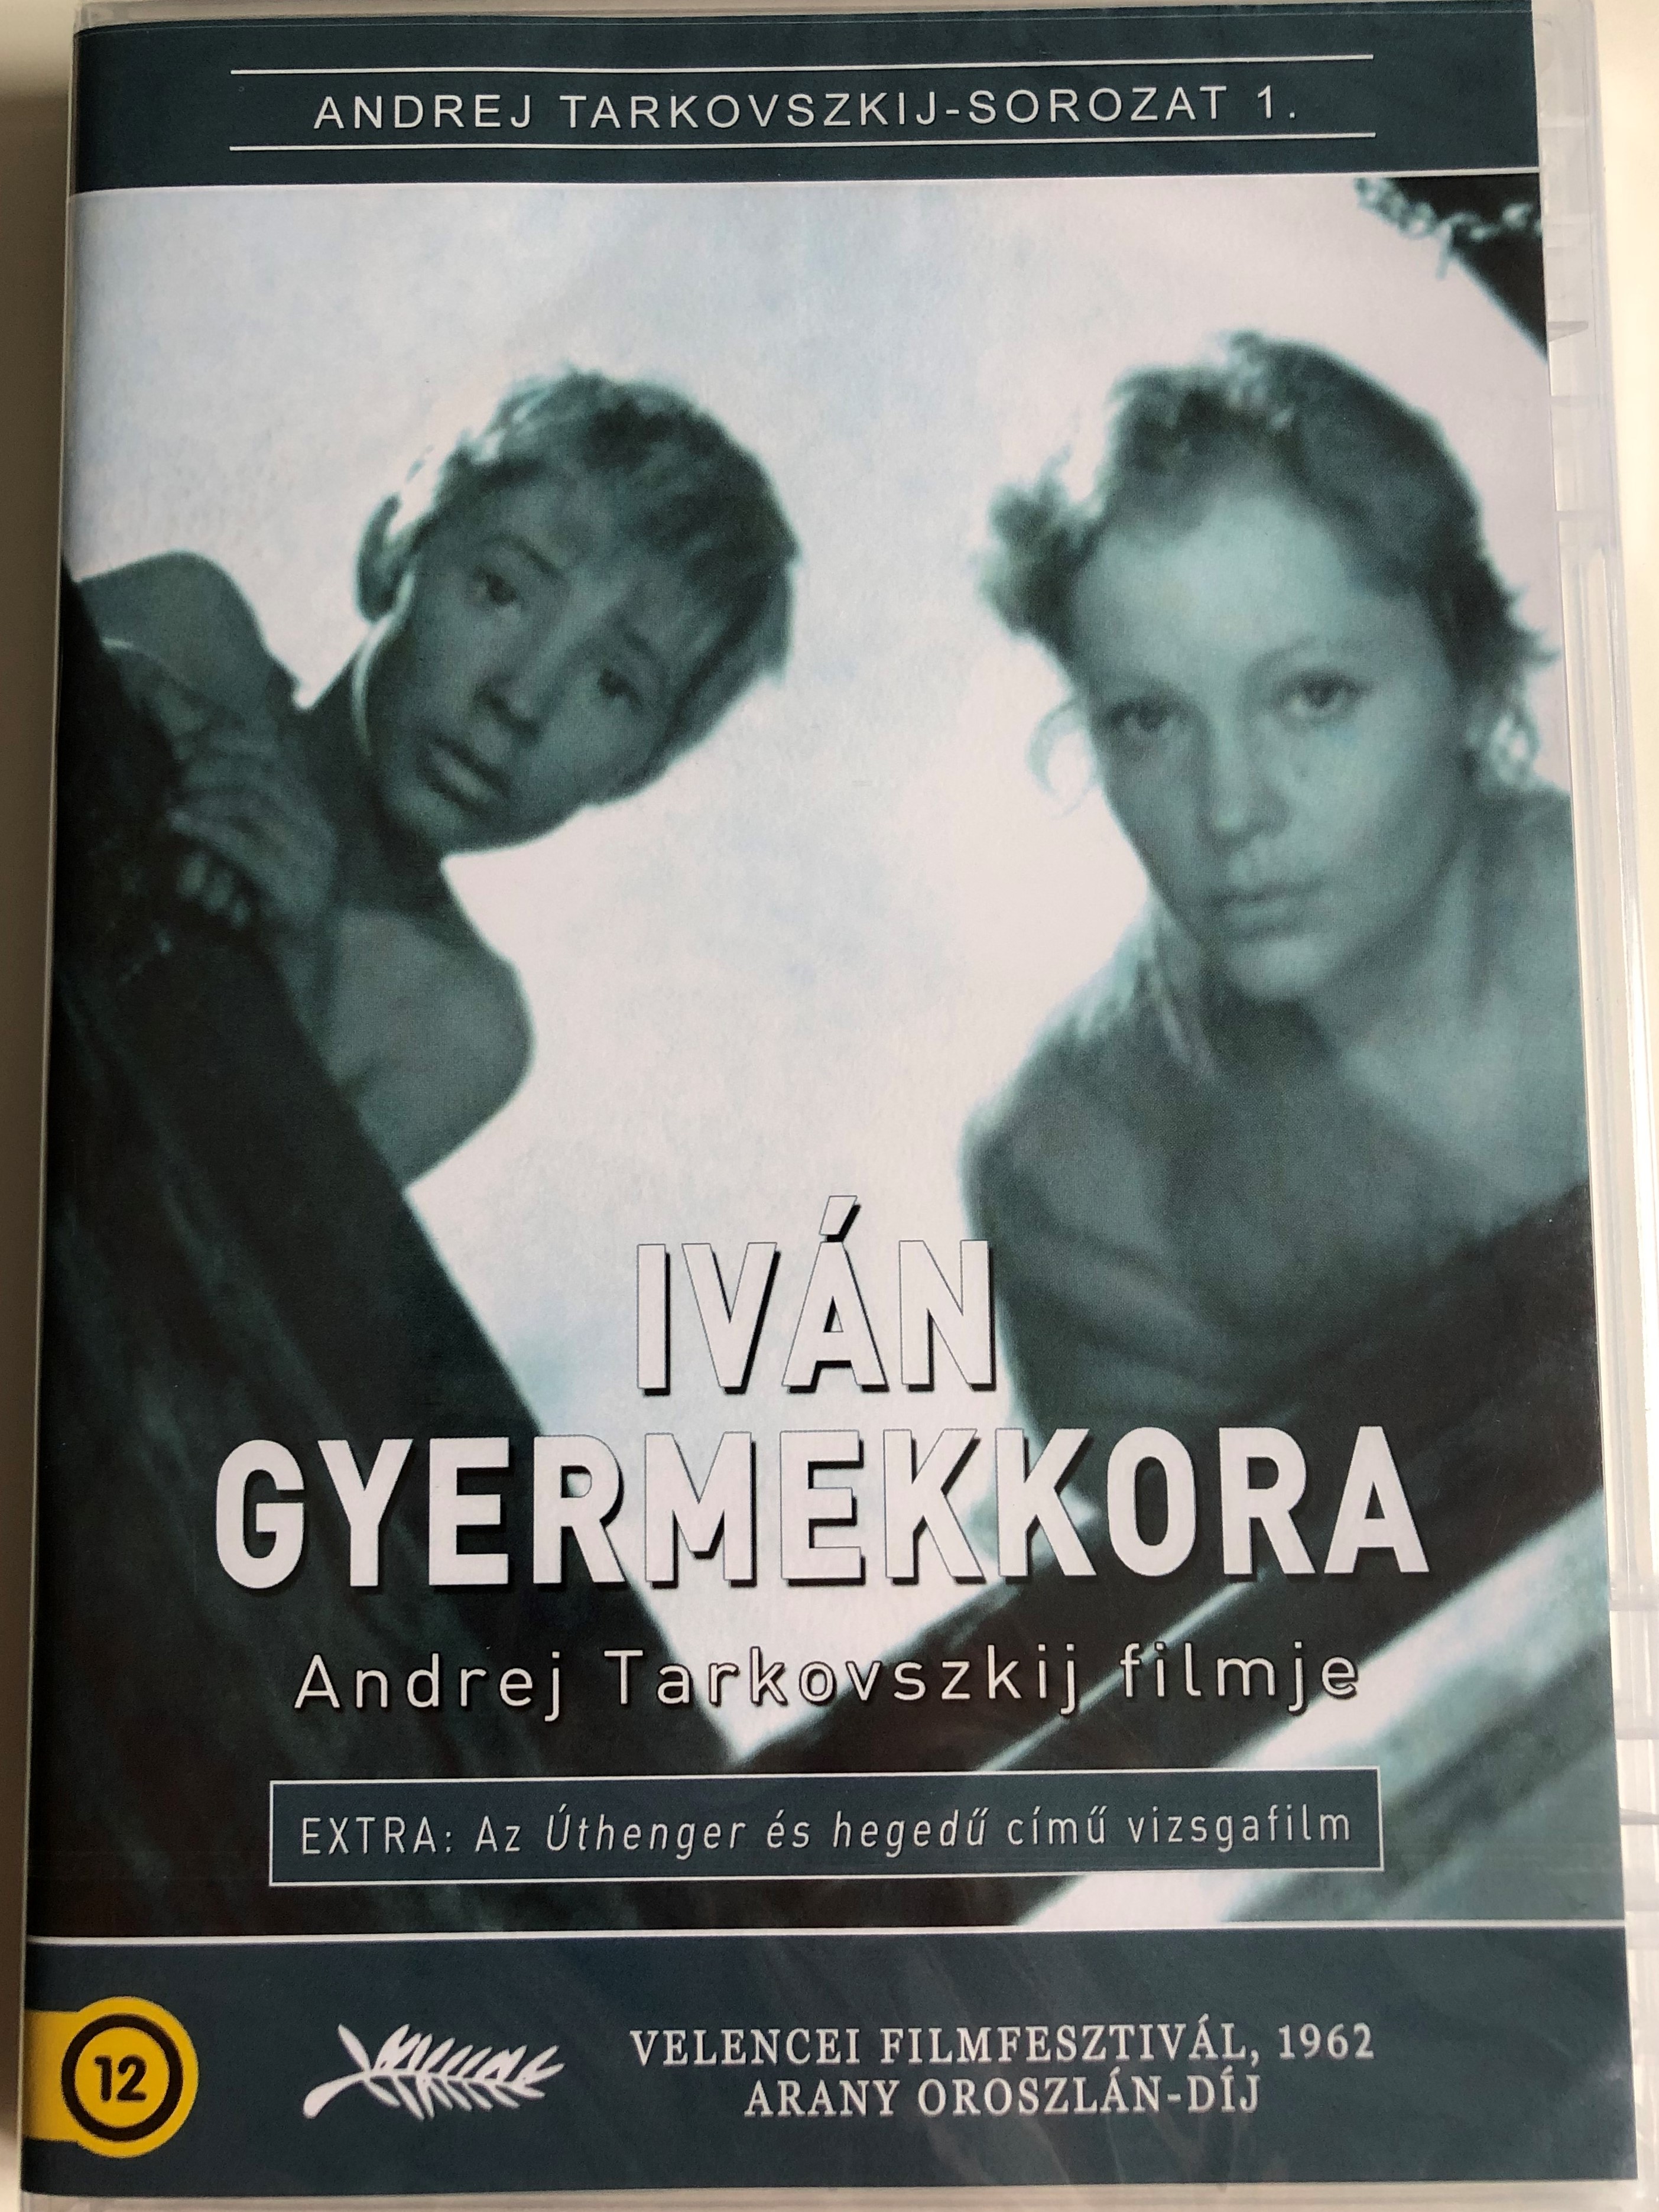 -ivanovo-detstvo-dvd-1962-iv-n-gyermekkora-ivan-s-childhood-directed-by-andrei-tarkovsky-starring-nikolai-burlyayev-valentin-zubkov-evgeny-zharikov-stepan-krylov-nikolai-grinko-1-.jpg